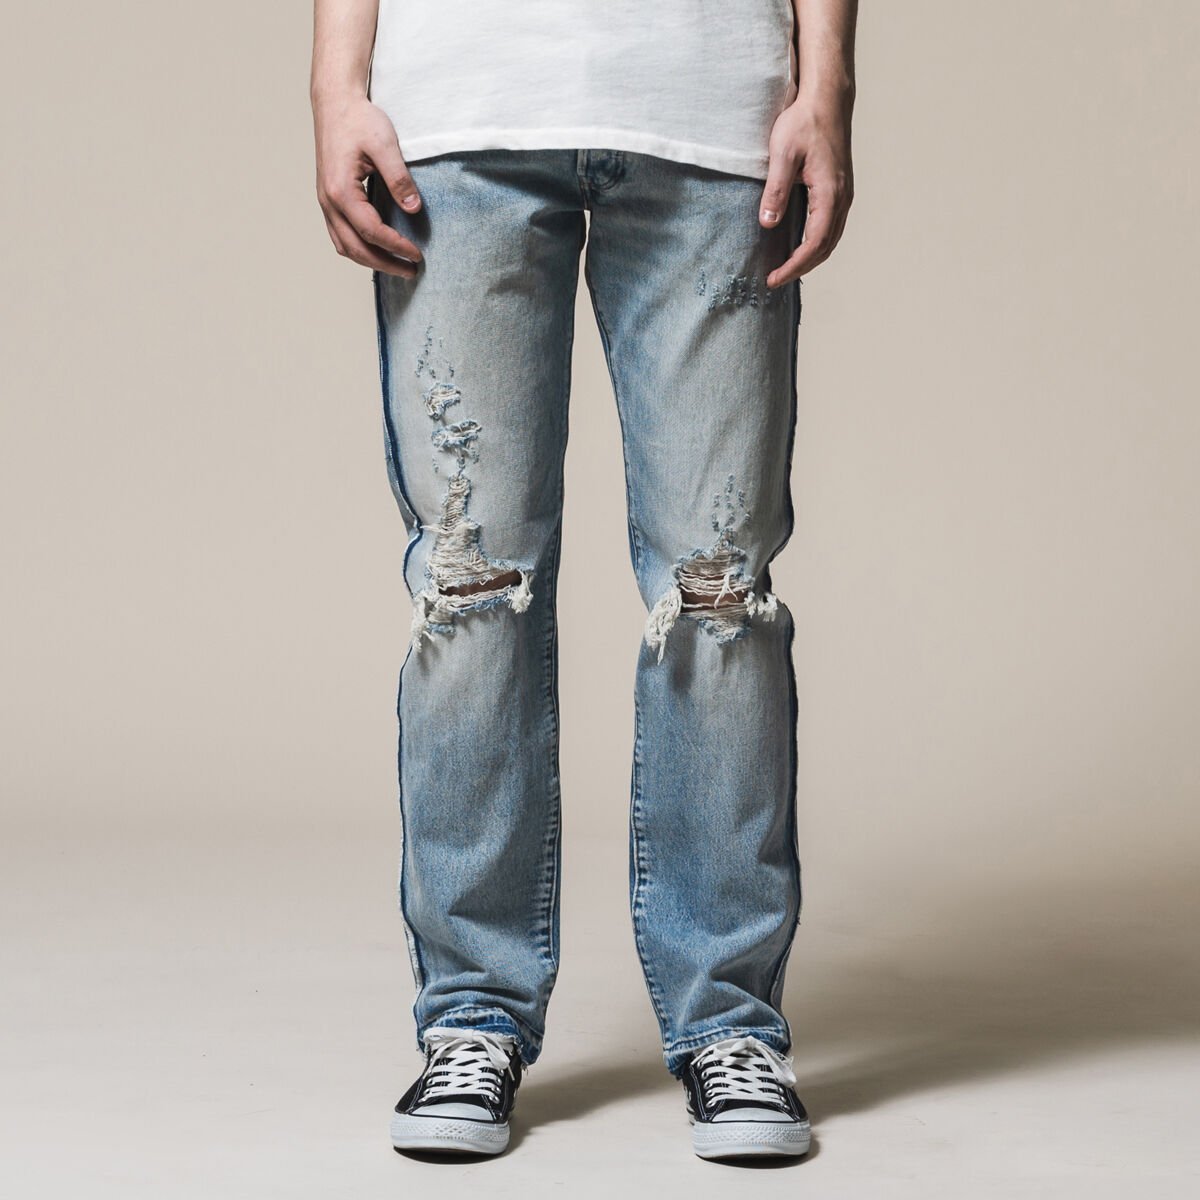 jeans levis original